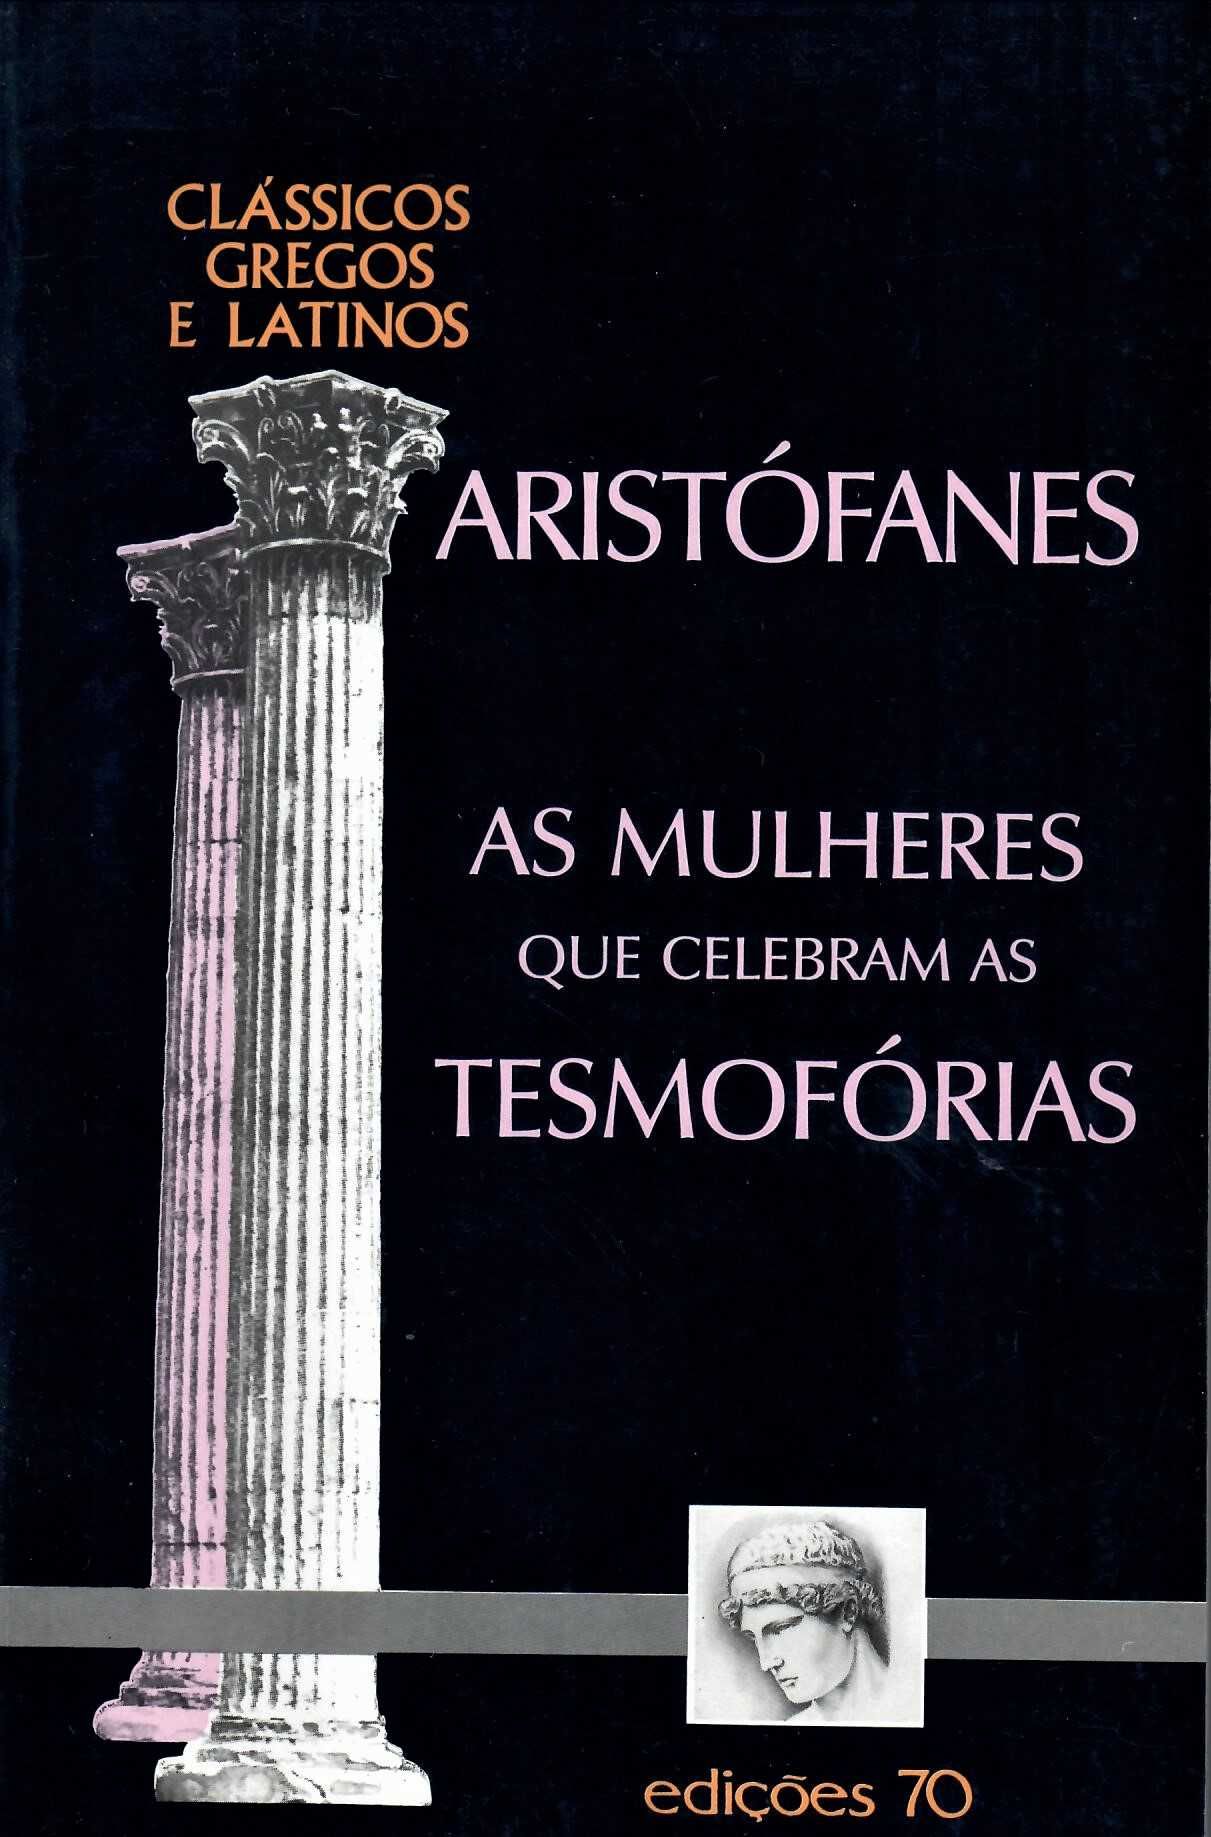 Clássicos Gregos e Latinos Aristófanes - Sófocles - Platão + 8 autores